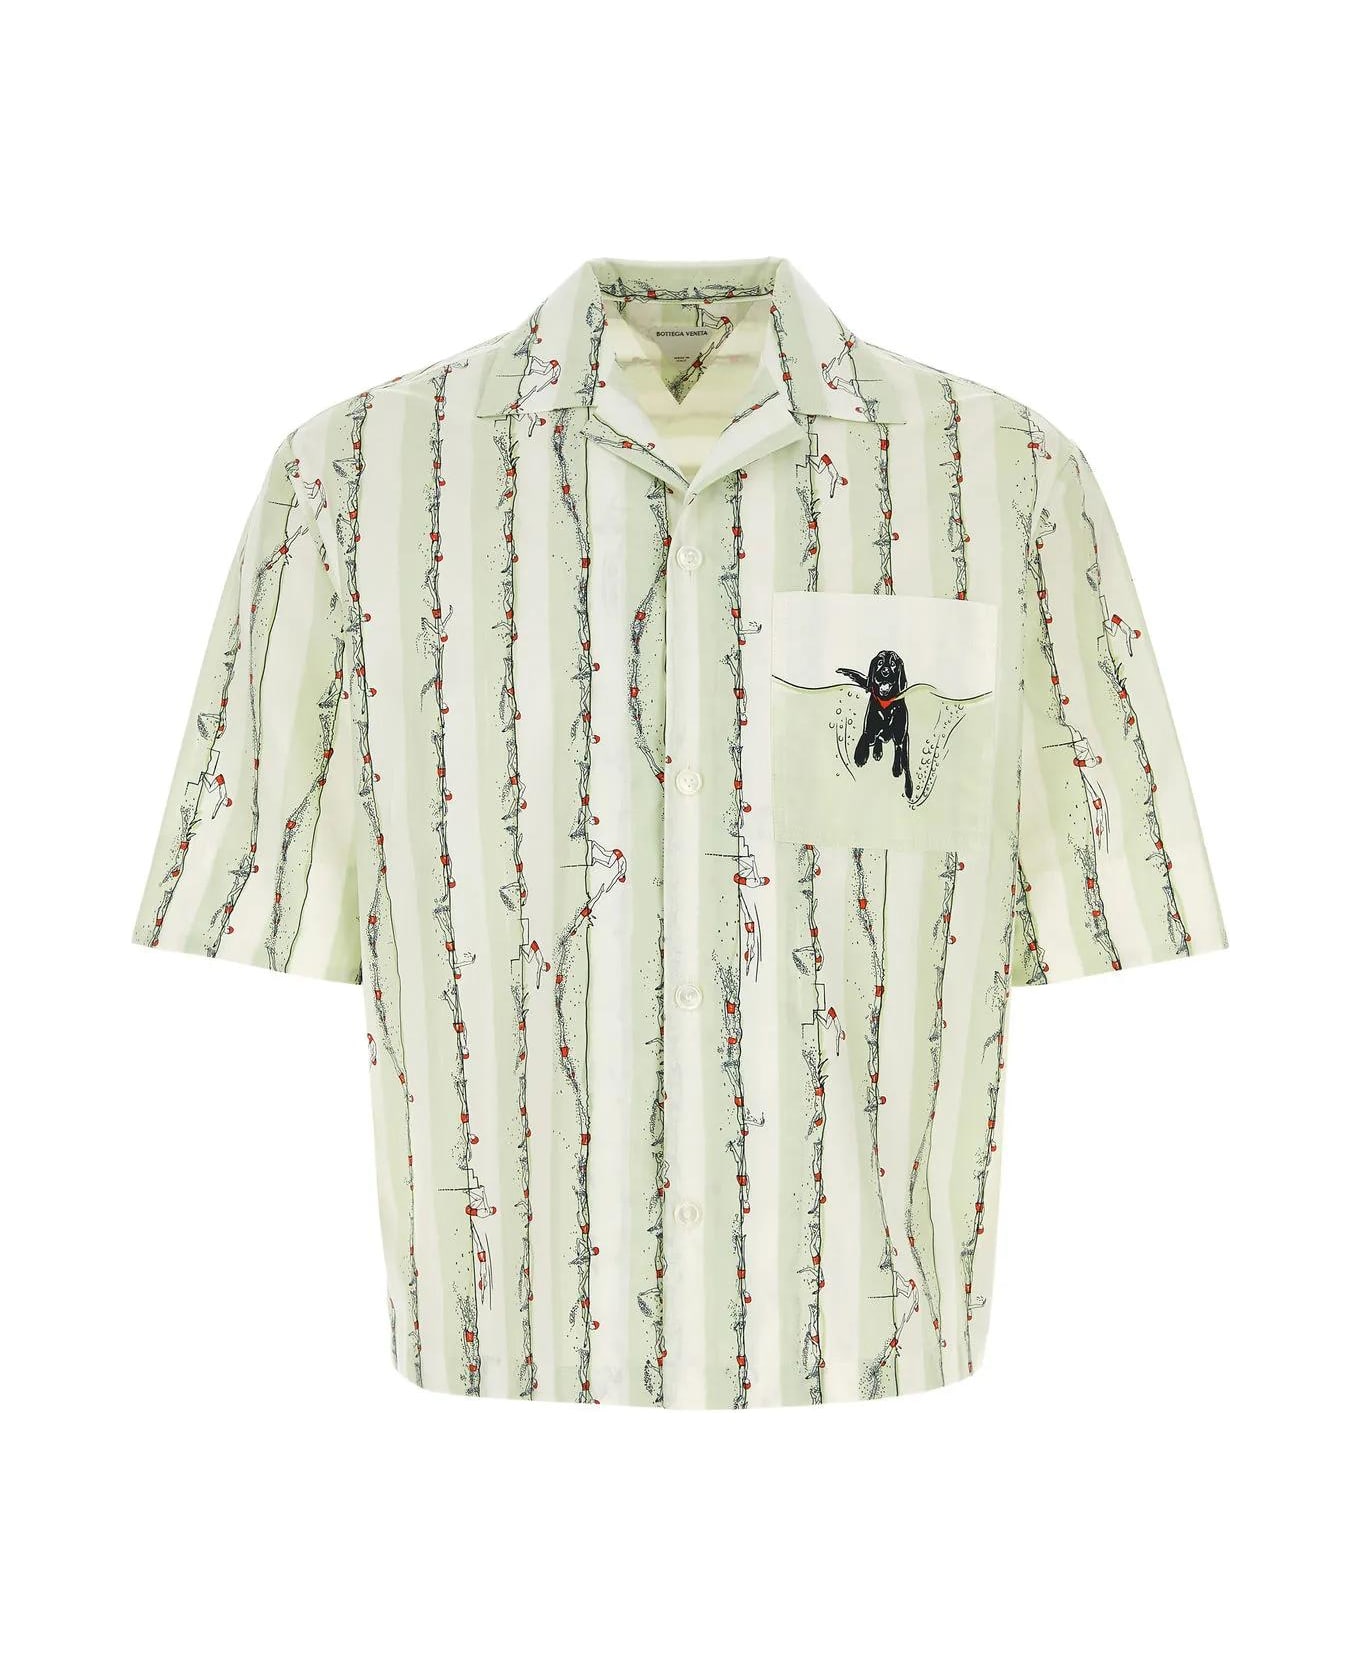 Bottega Veneta Embroidered Poplin Shirt